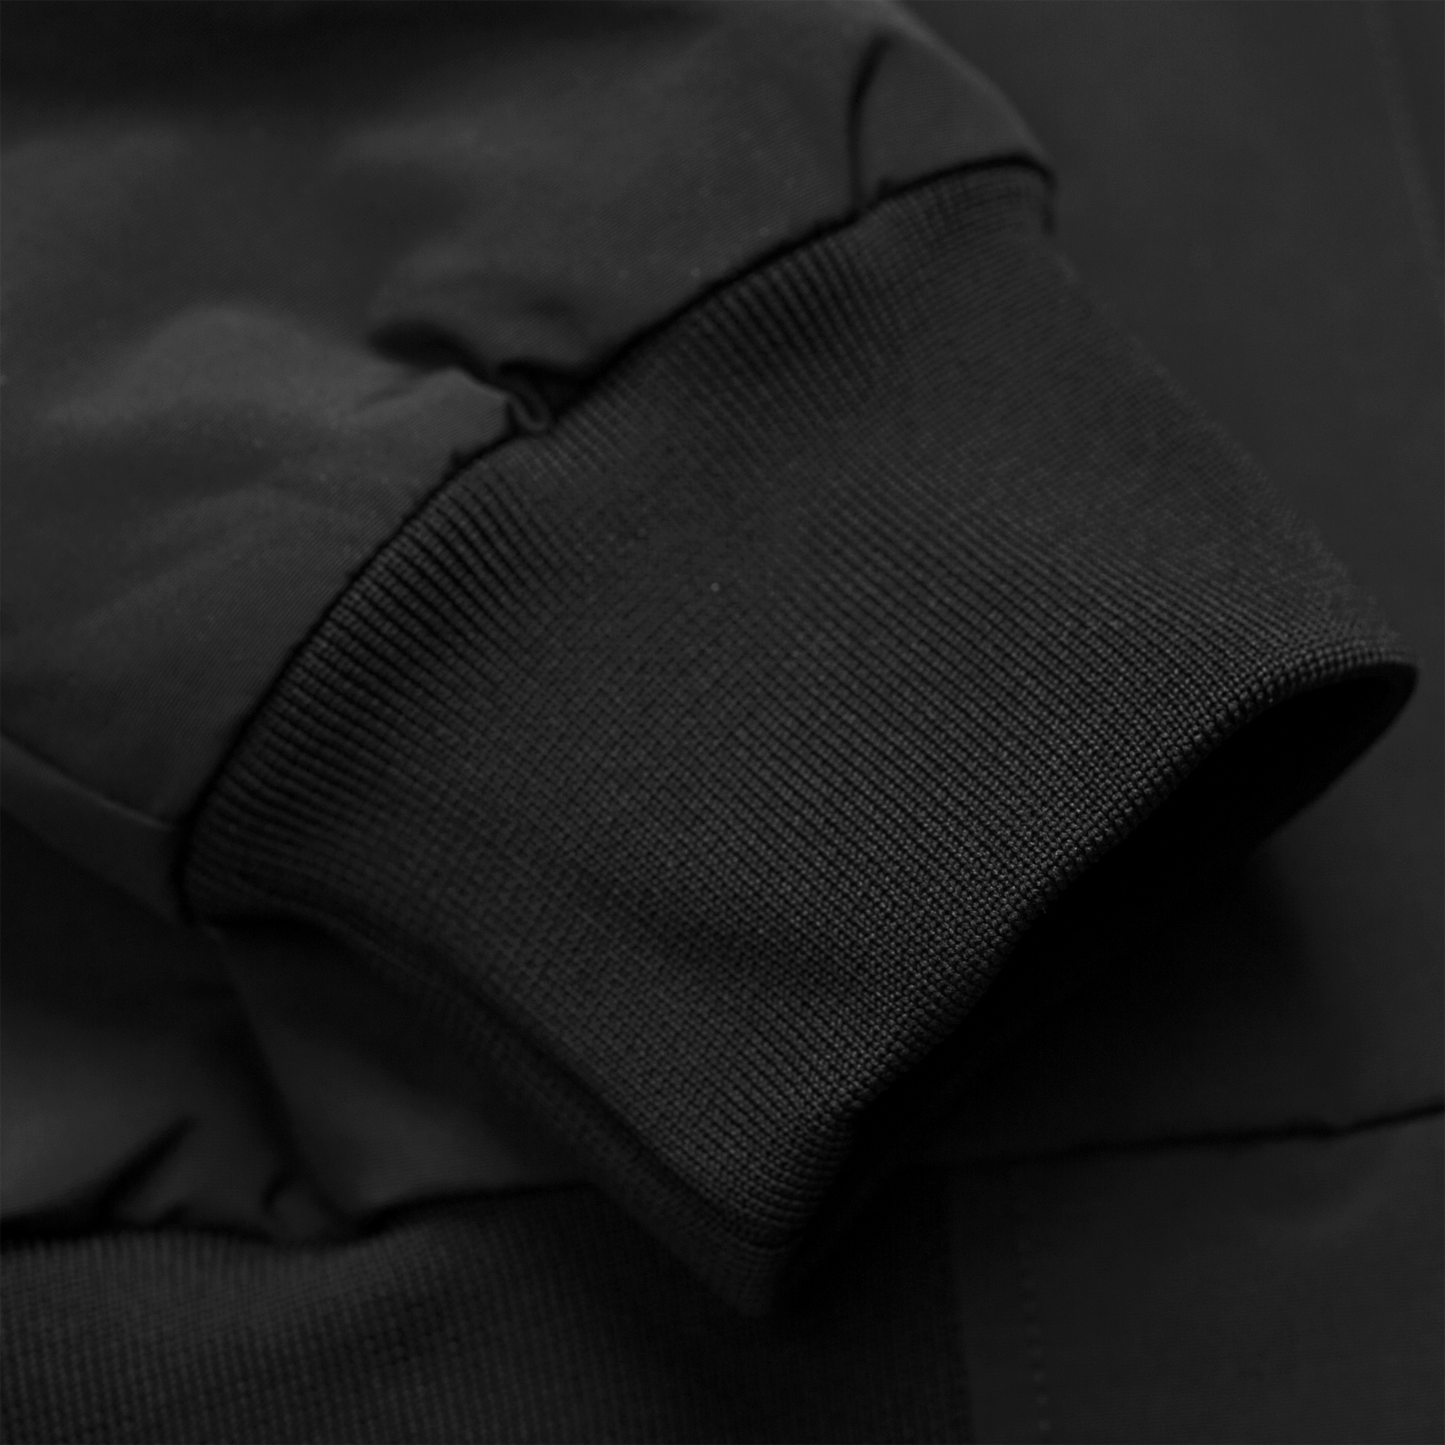 Carhartt WIP Hooded Sail Jacket em preto com logo bordado na frente em branco. Foto de detalhe do punho.